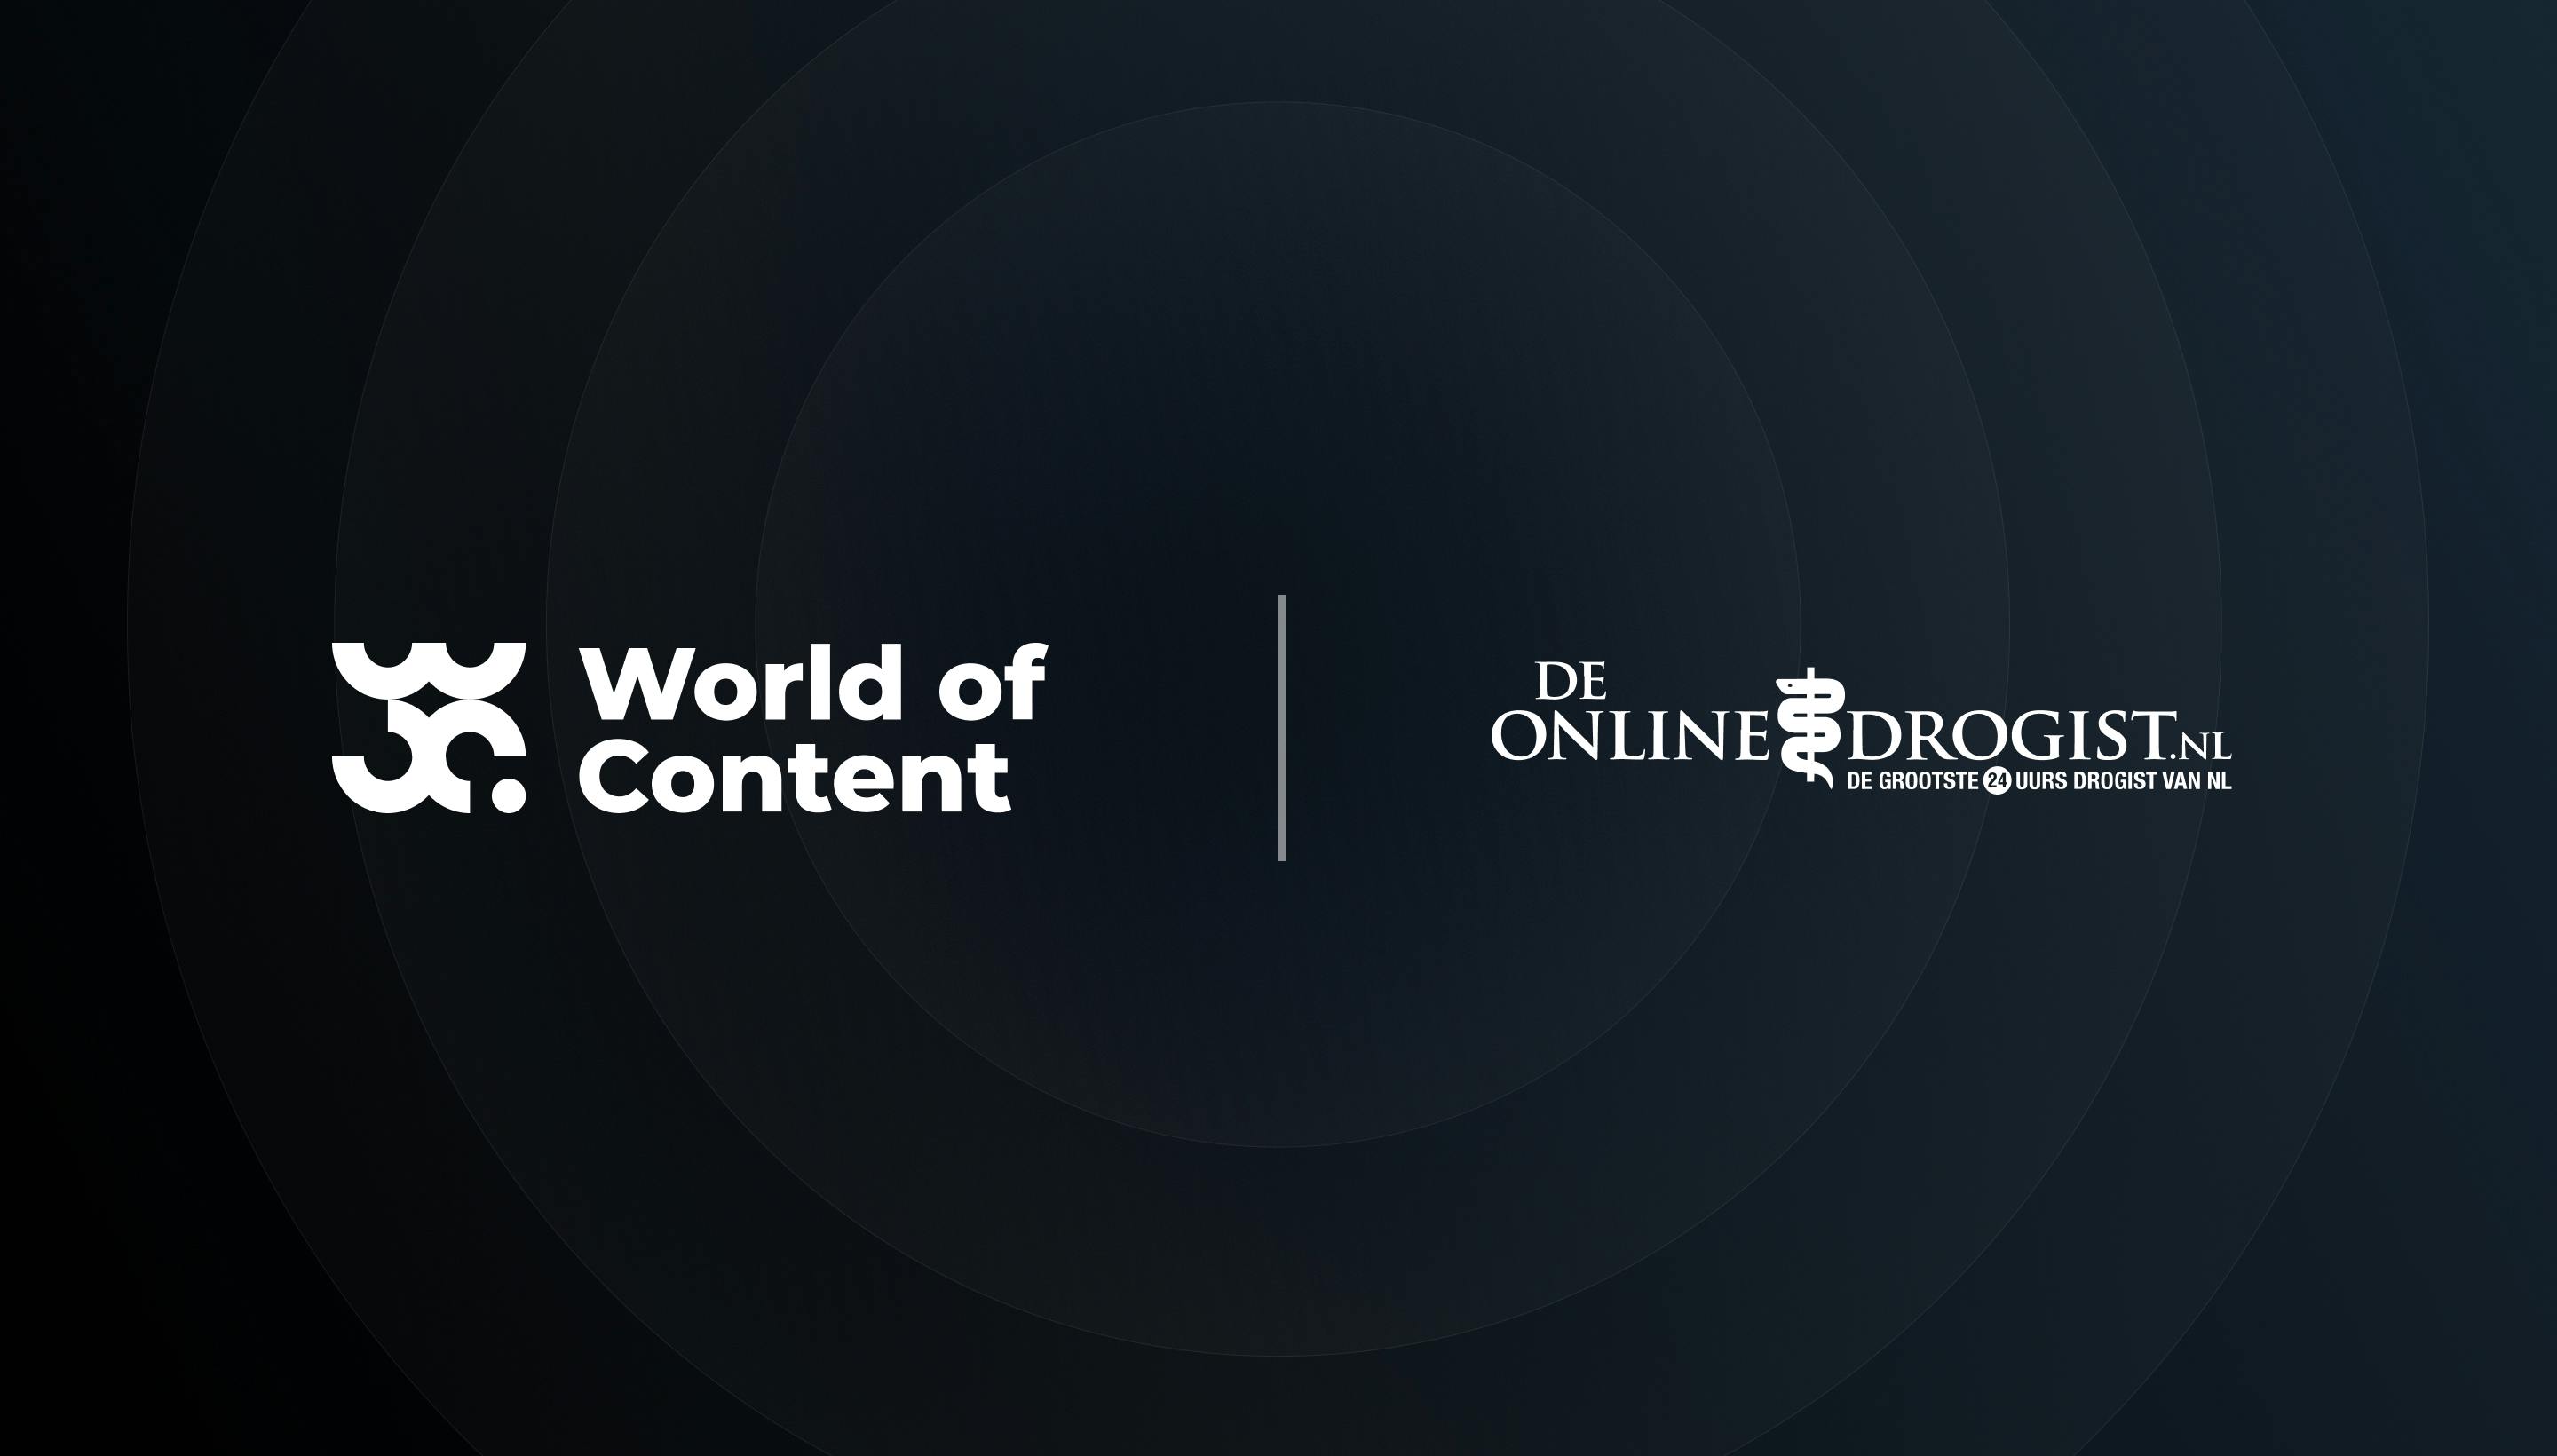 klif Zichtbaar uitdrukking DeOnlineDrogist.nl chooses World of Content | World of Content